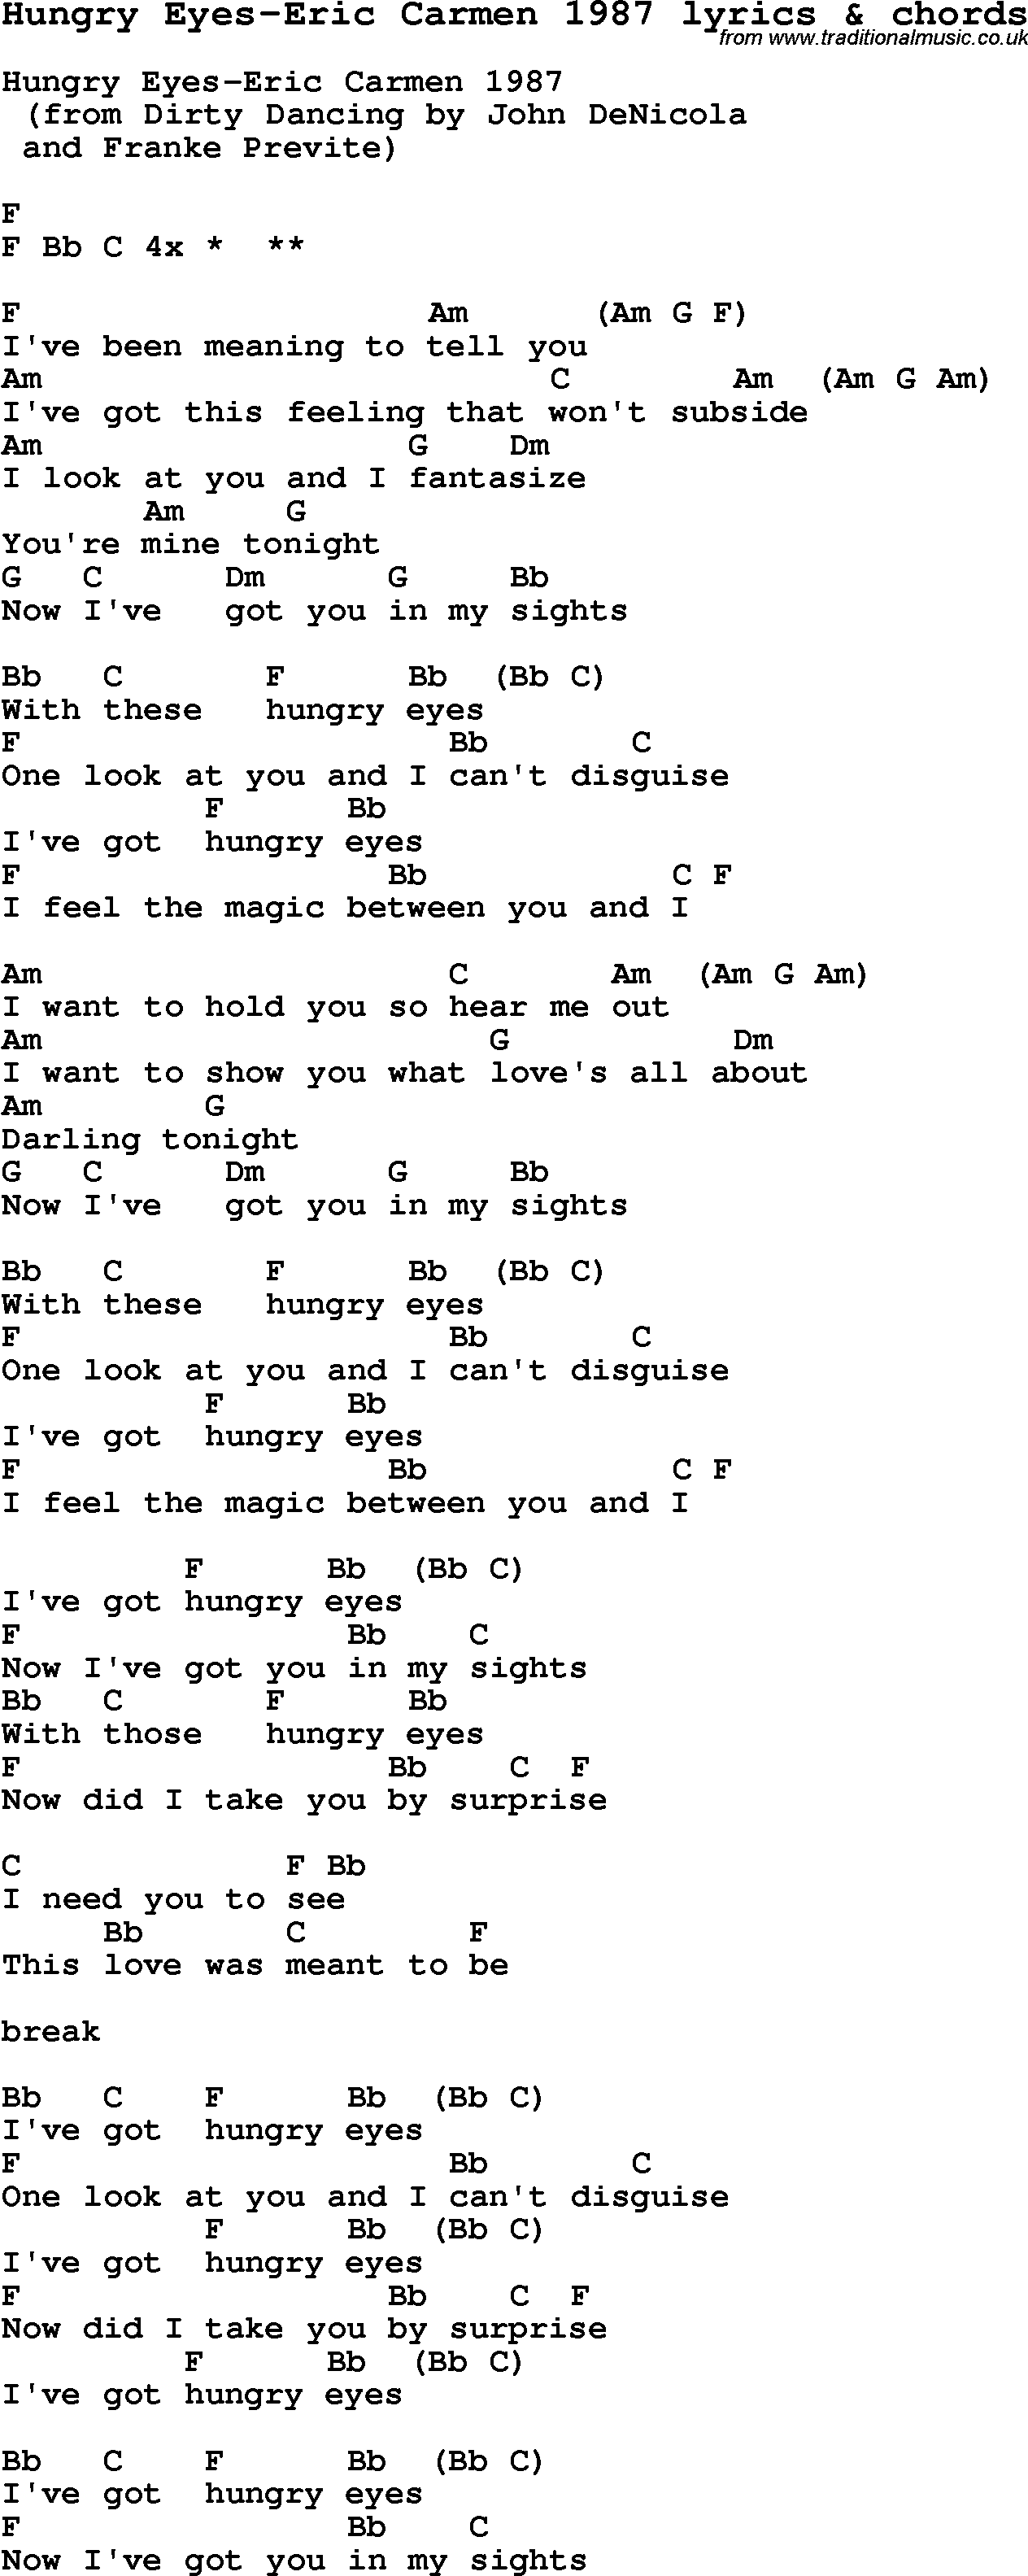 Love Song Lyrics for: Hungry Eyes-Eric Carmen 1987 with chords for Ukulele, Guitar Banjo etc.